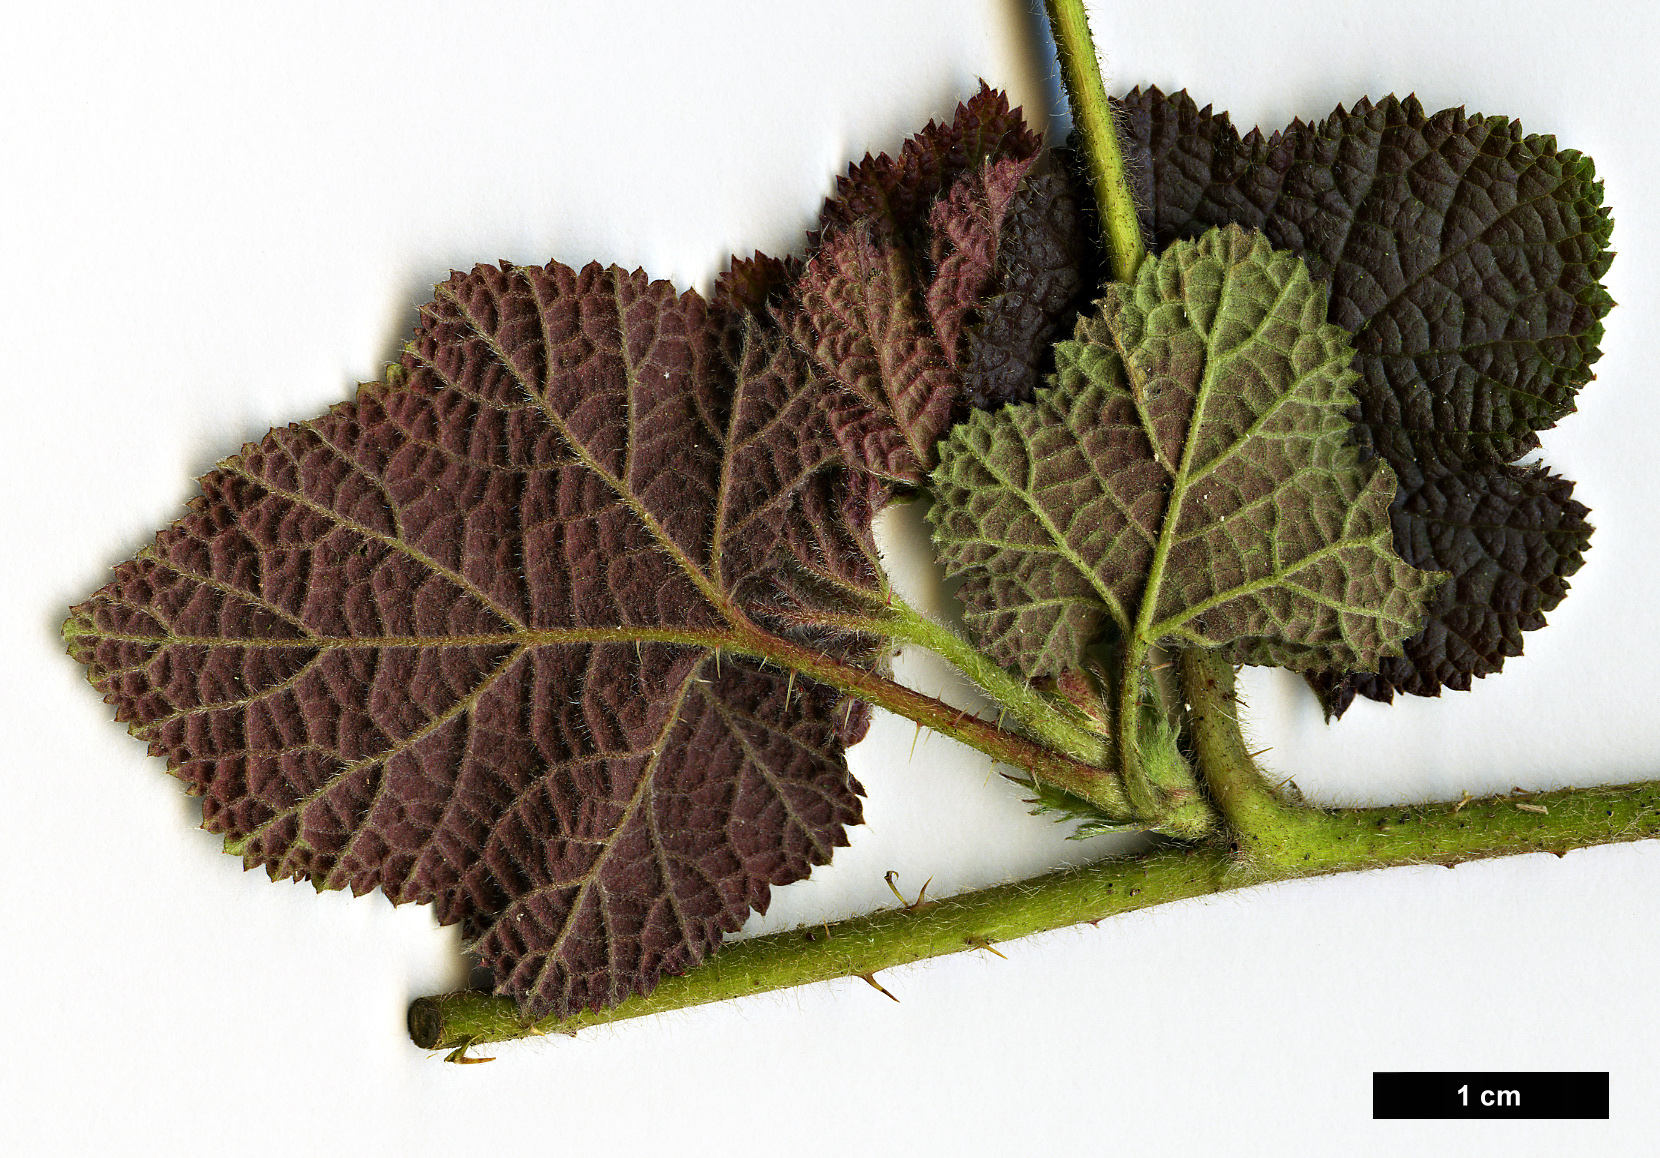 High resolution image: Family: Rosaceae - Genus: Rubus - Taxon: alceifolius - SpeciesSub: var. purpurascens